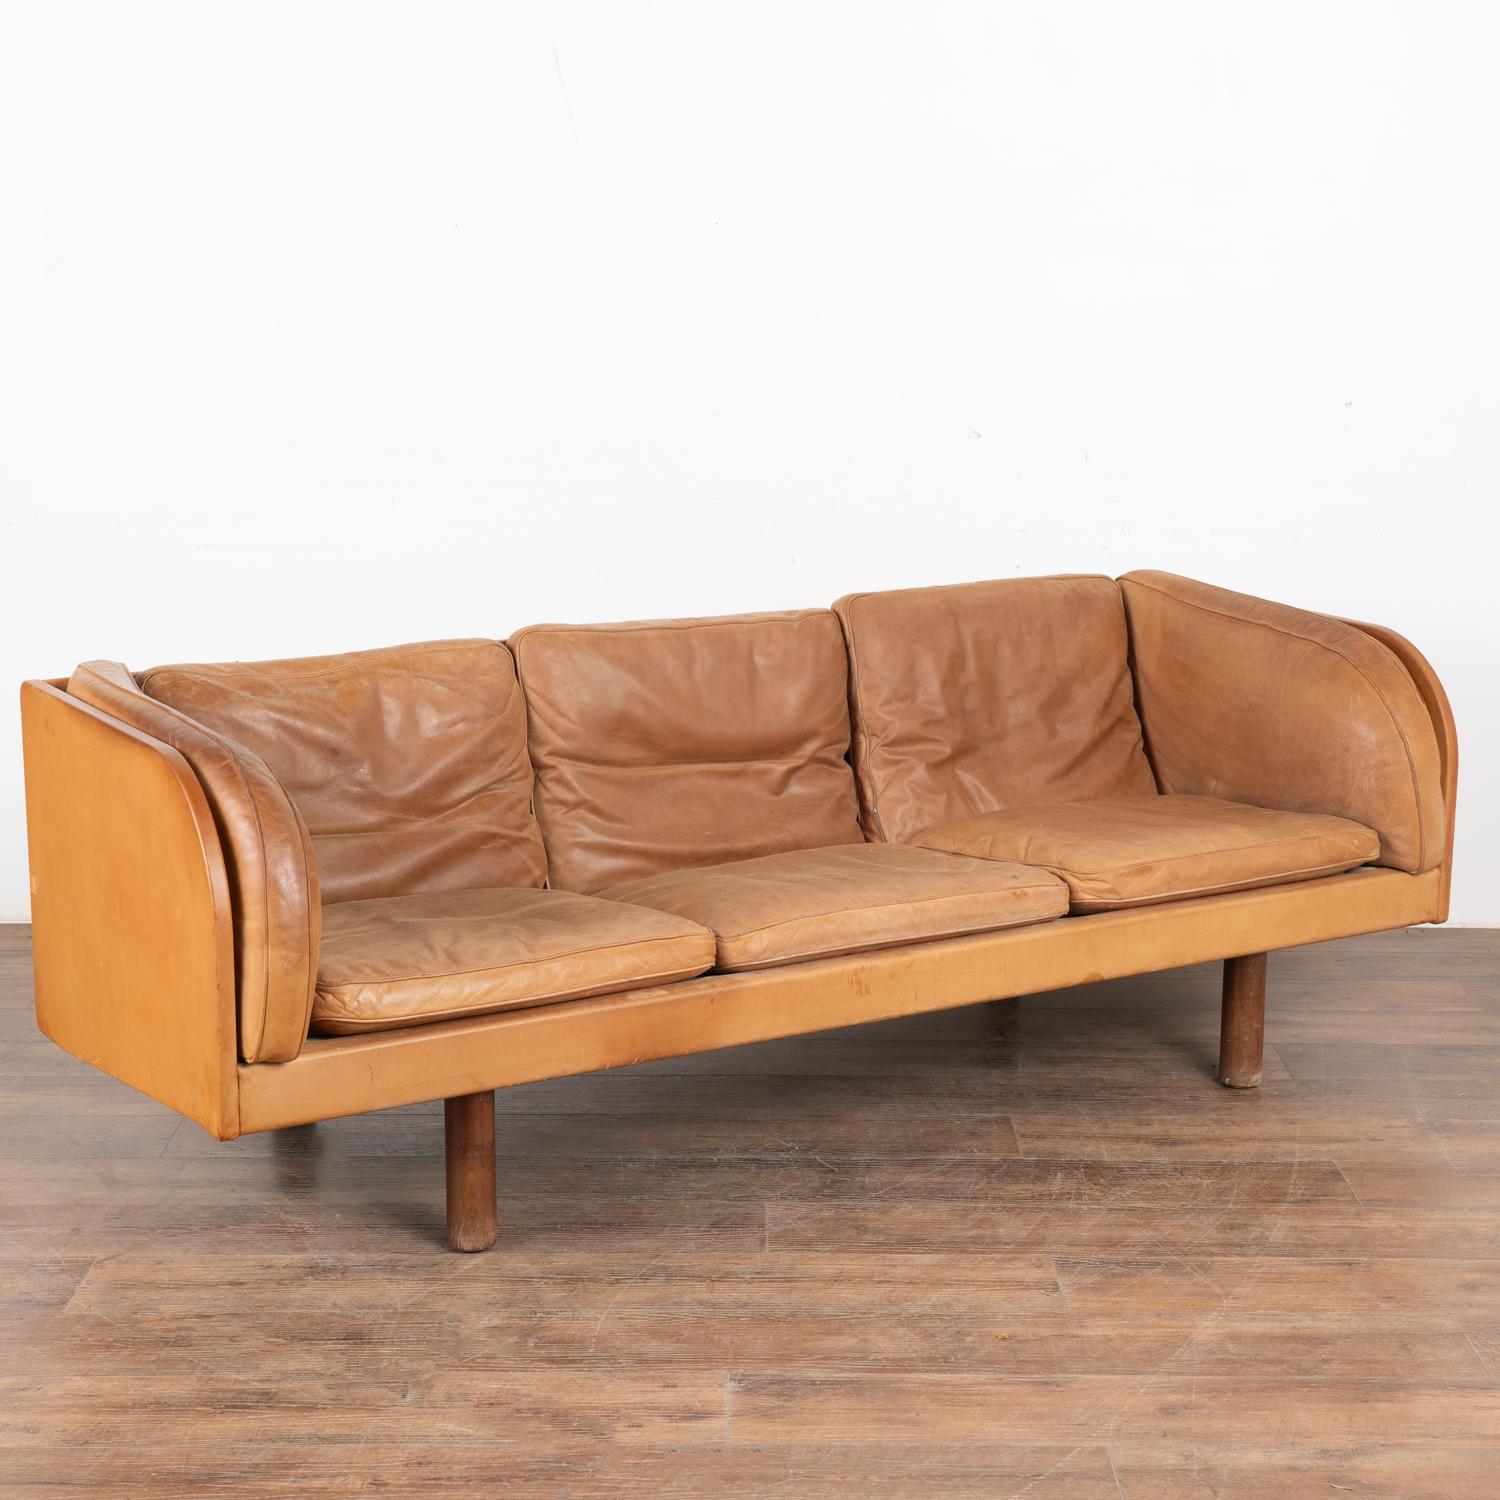 Magnifique canapé trois places en cuir marron moderne du milieu du siècle, avec d'impressionnants accoudoirs incurvés.
Les années d'utilisation sont révélées par la patine vieillie du cuir, y compris les impressions, les éraflures, les taches, les